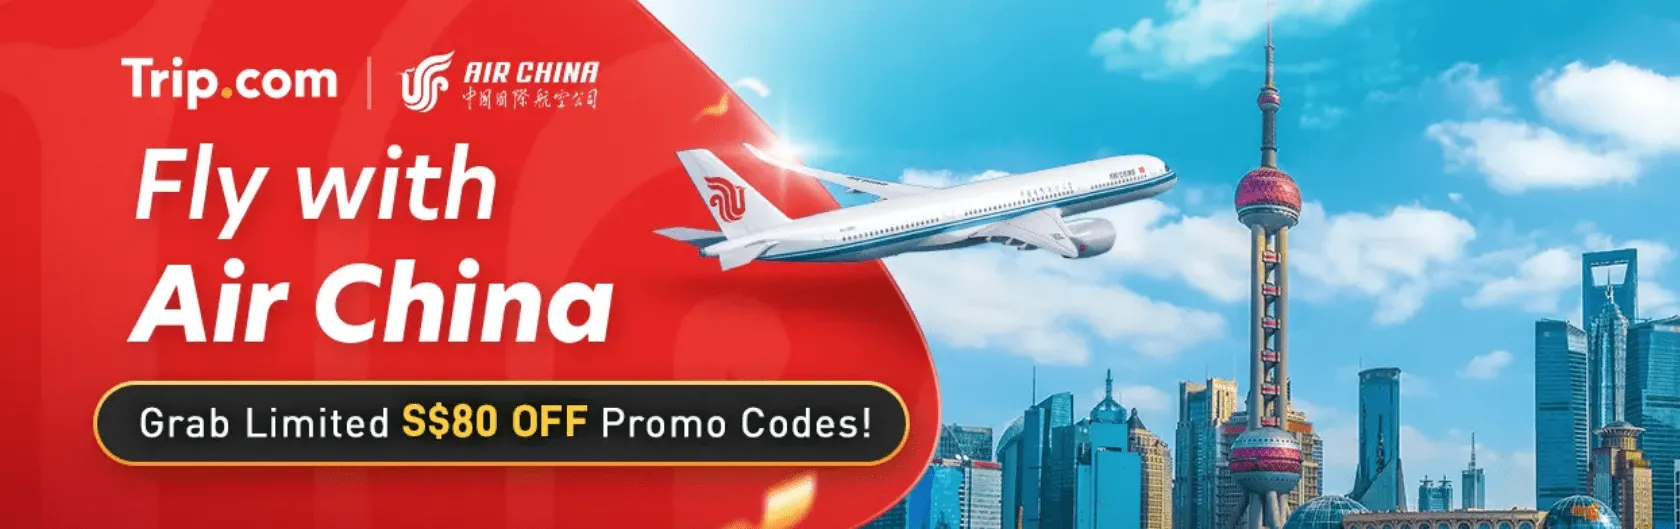 Trip.com Promo Code Singapore: Fly with Air China